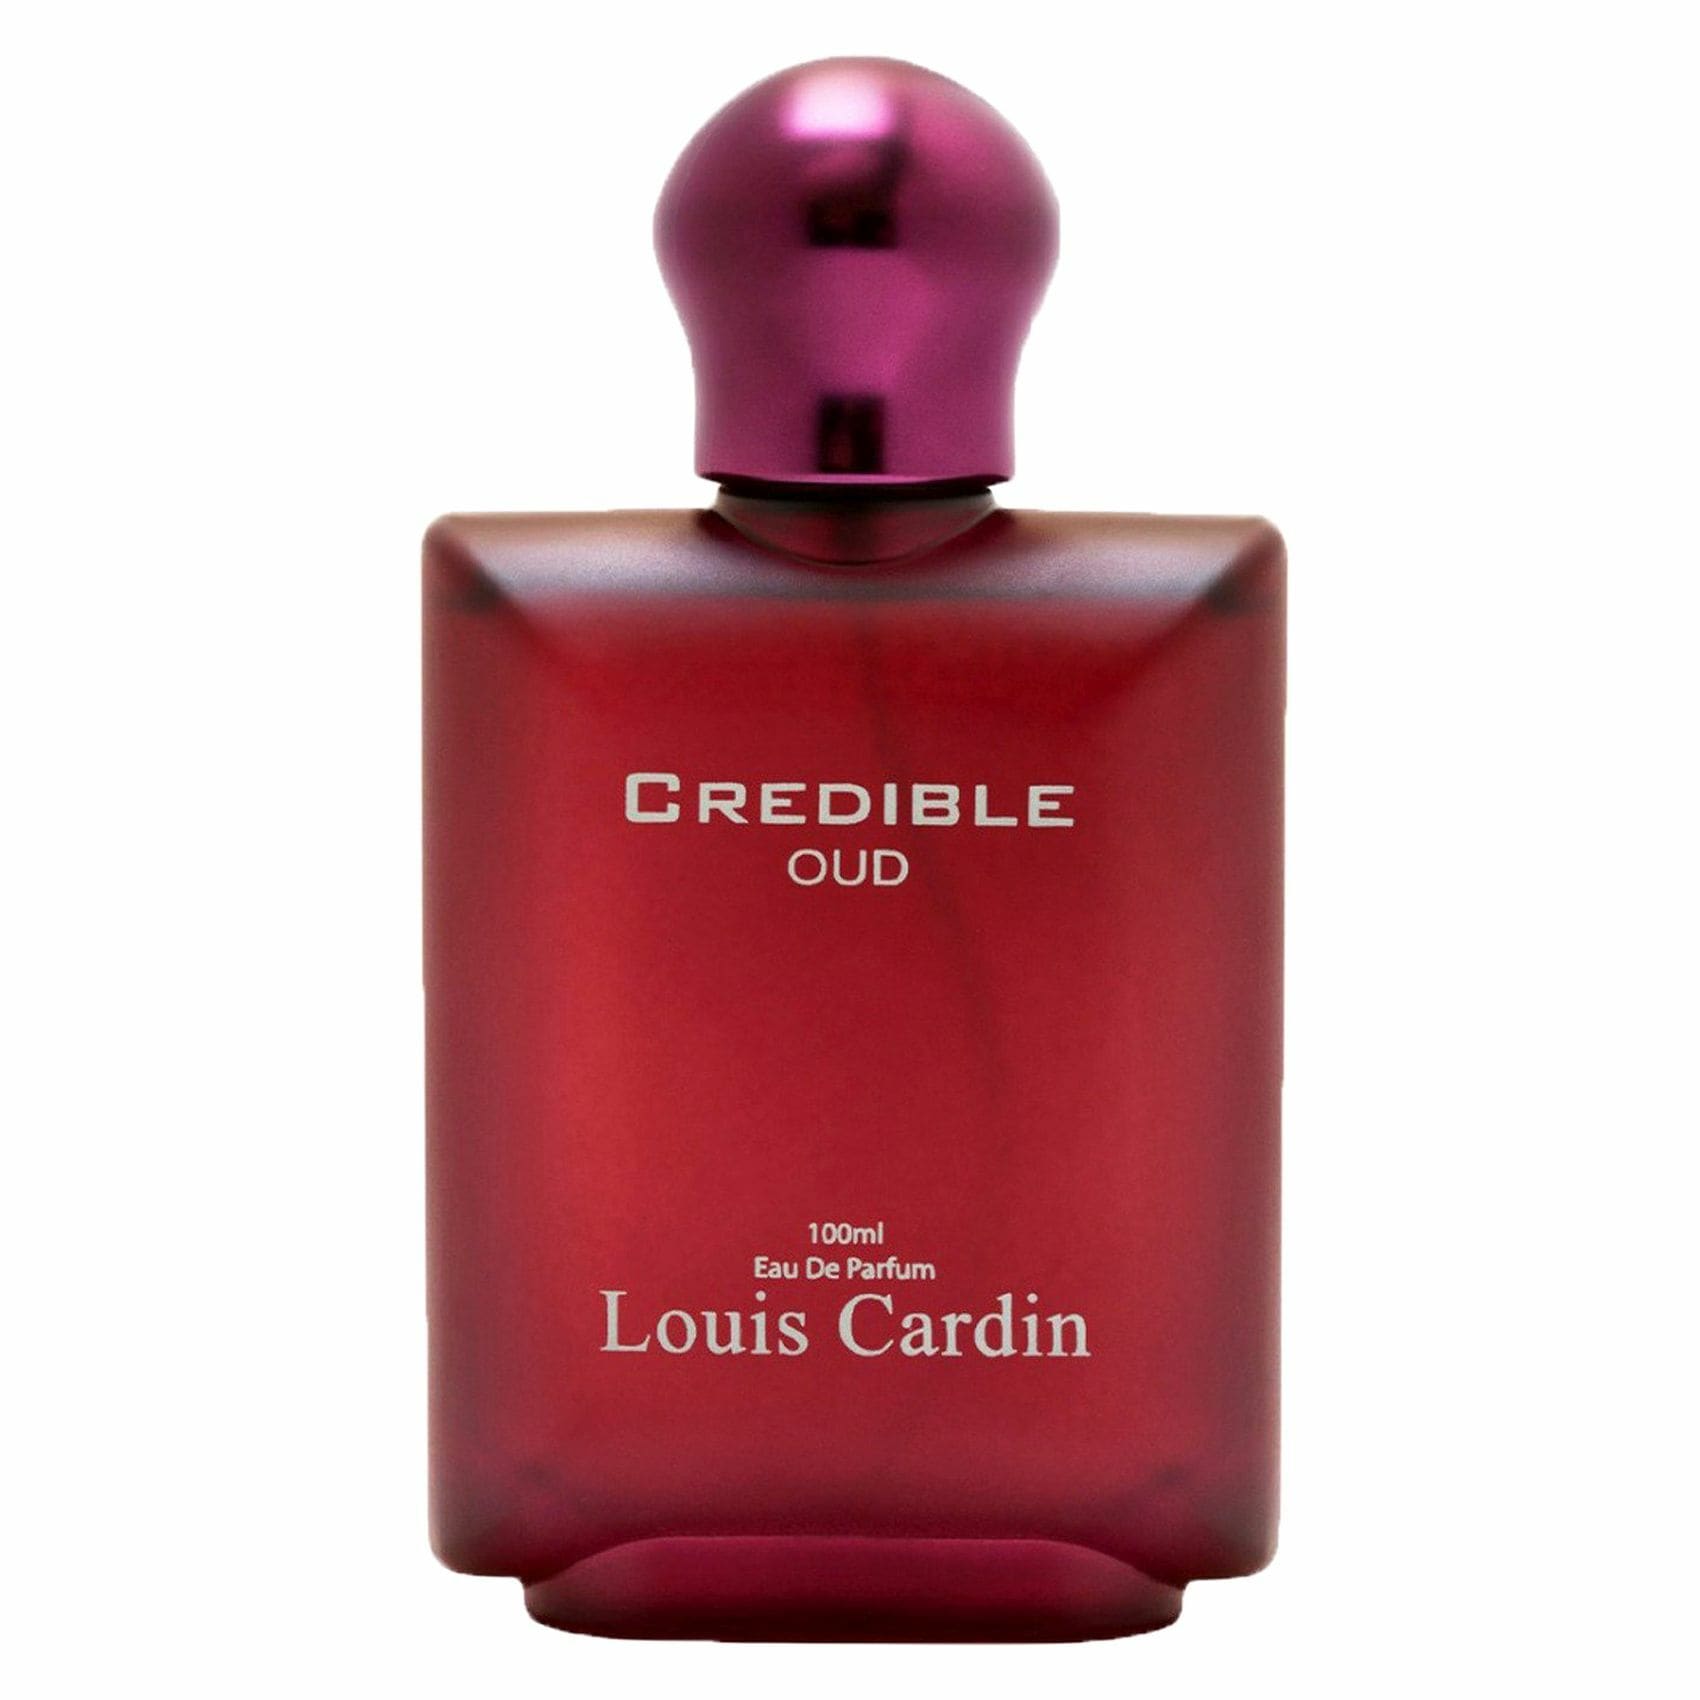 Louis Cardin White Gold Eau De Perfume for Women, 100ml price in UAE,  UAE